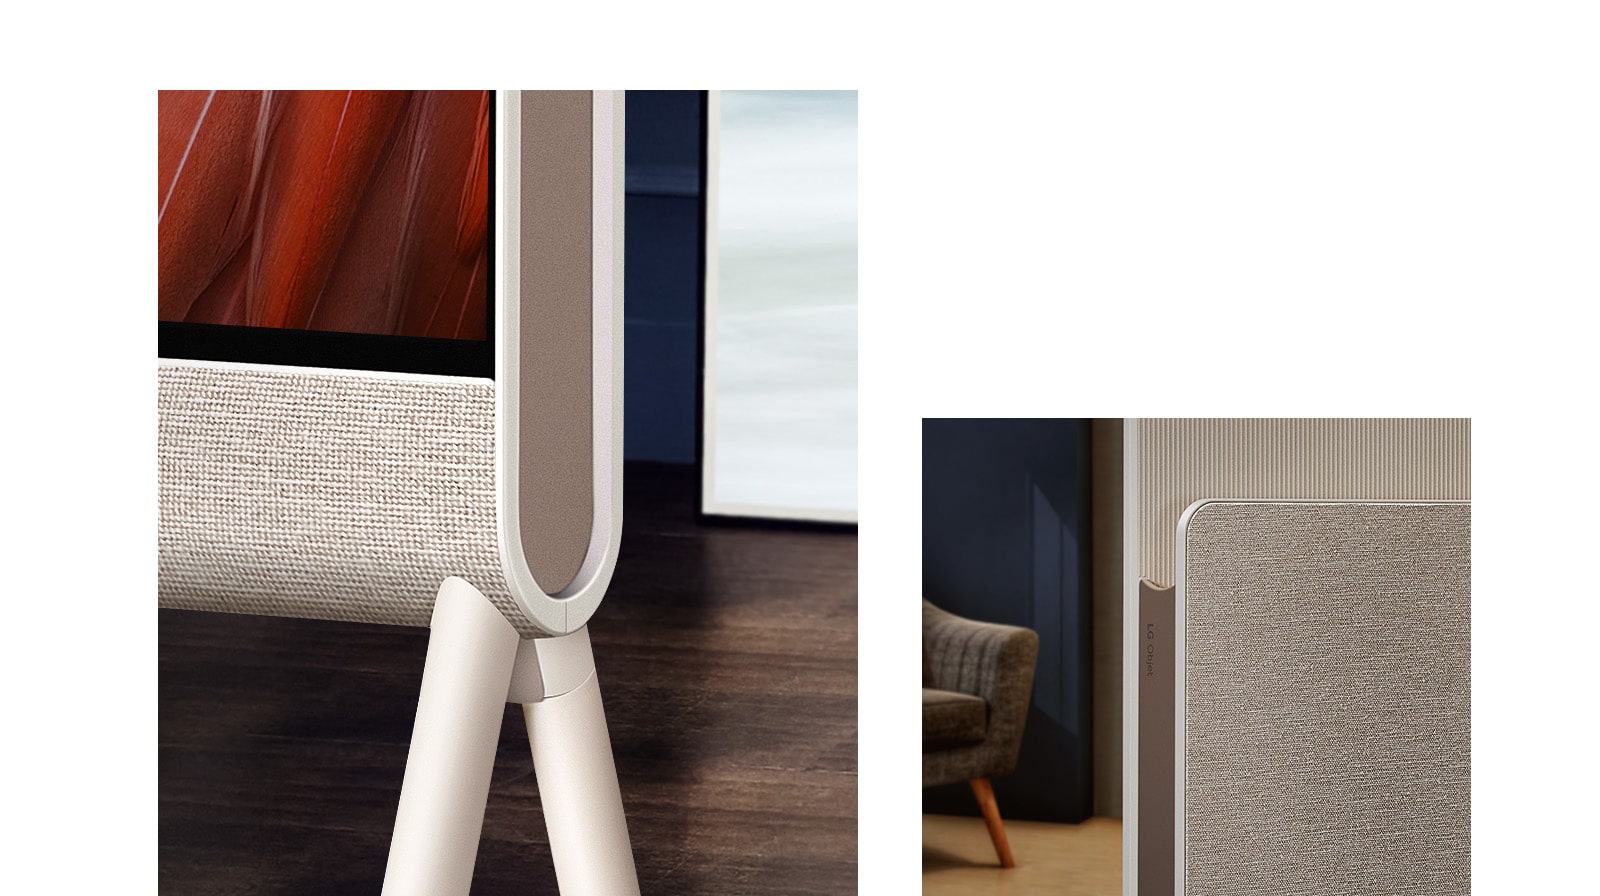 Zbliżenie na przód telewizora Posé z zaznaczoną tkaniną w ramie i drewnianą podłogą w tle.  Zbliżenie na tkaninę pokrycia stojaka do drukowania i logo LG Objet, w tle fotel.